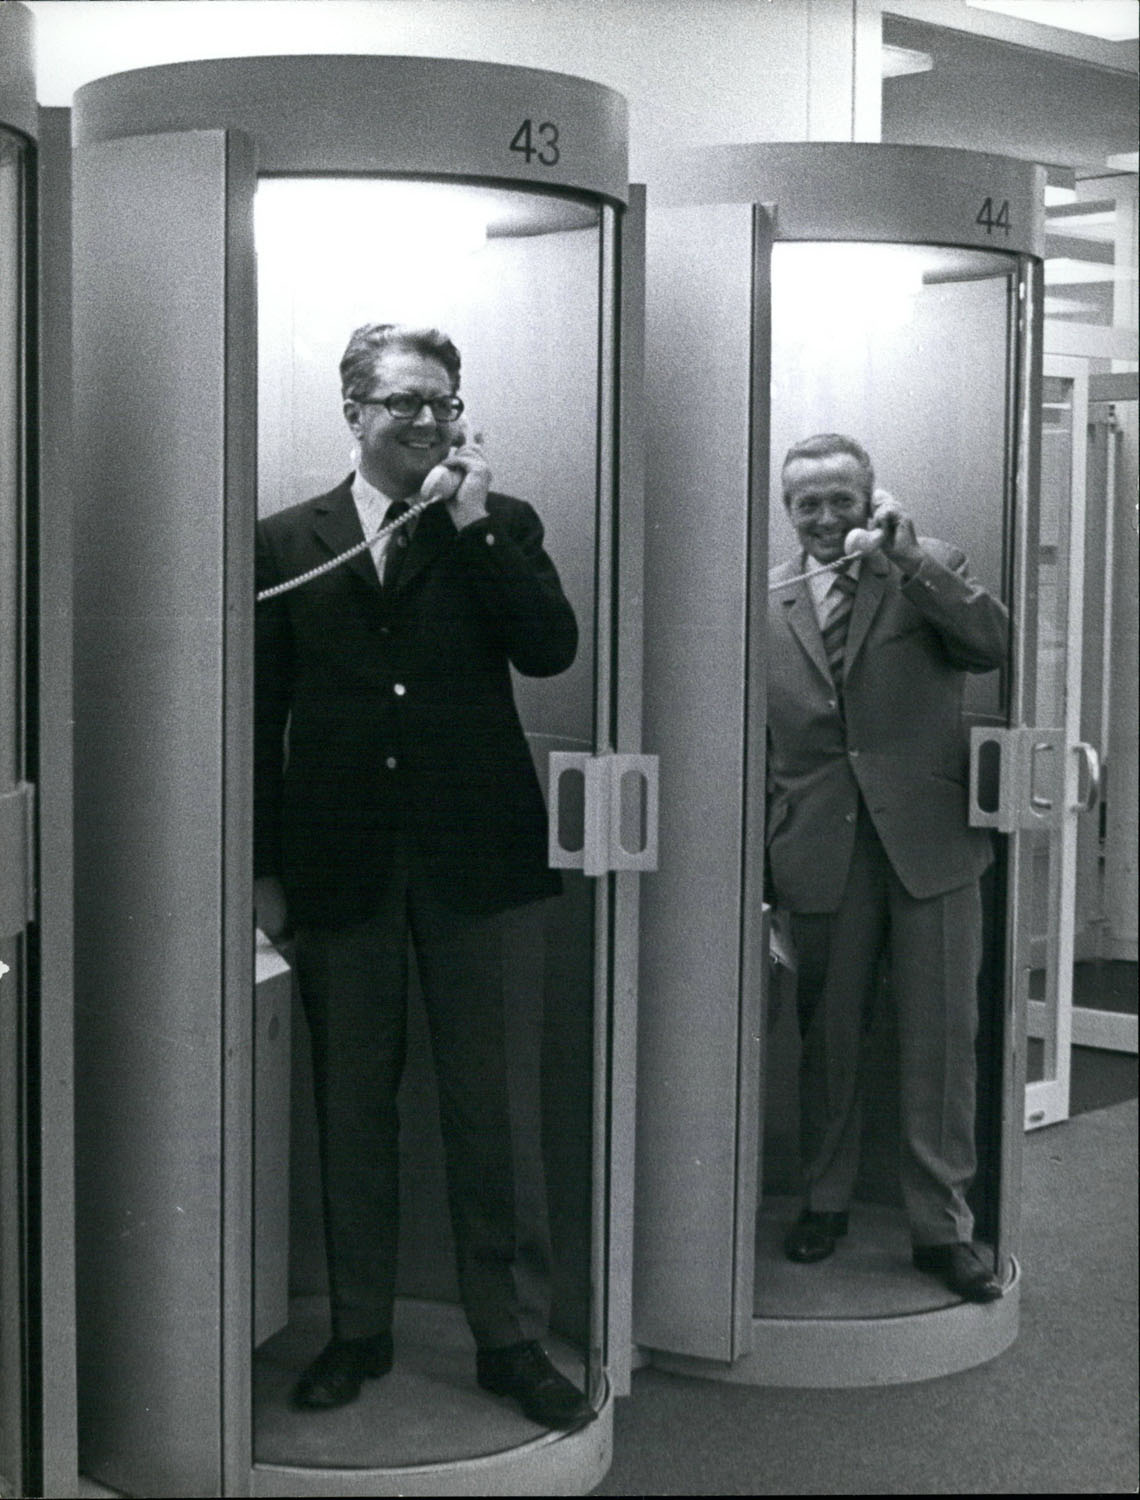 Schwarz-Weiß-Fotografie von zwei Männern die jeweils in einer Telefonzentrale telefonieren.